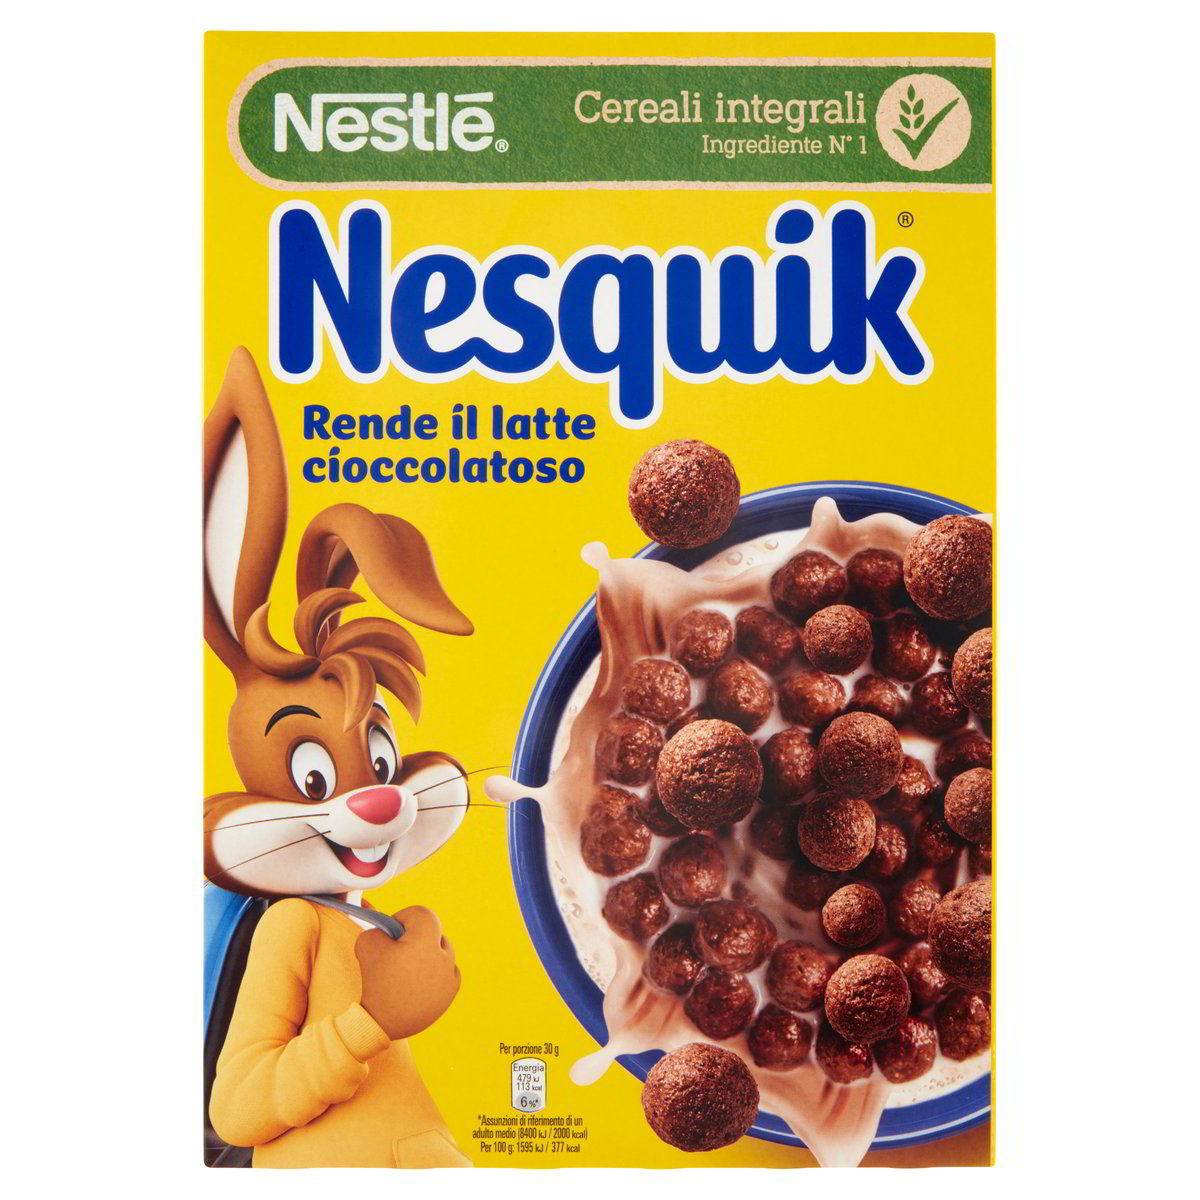 Cereali integrali Nesquik